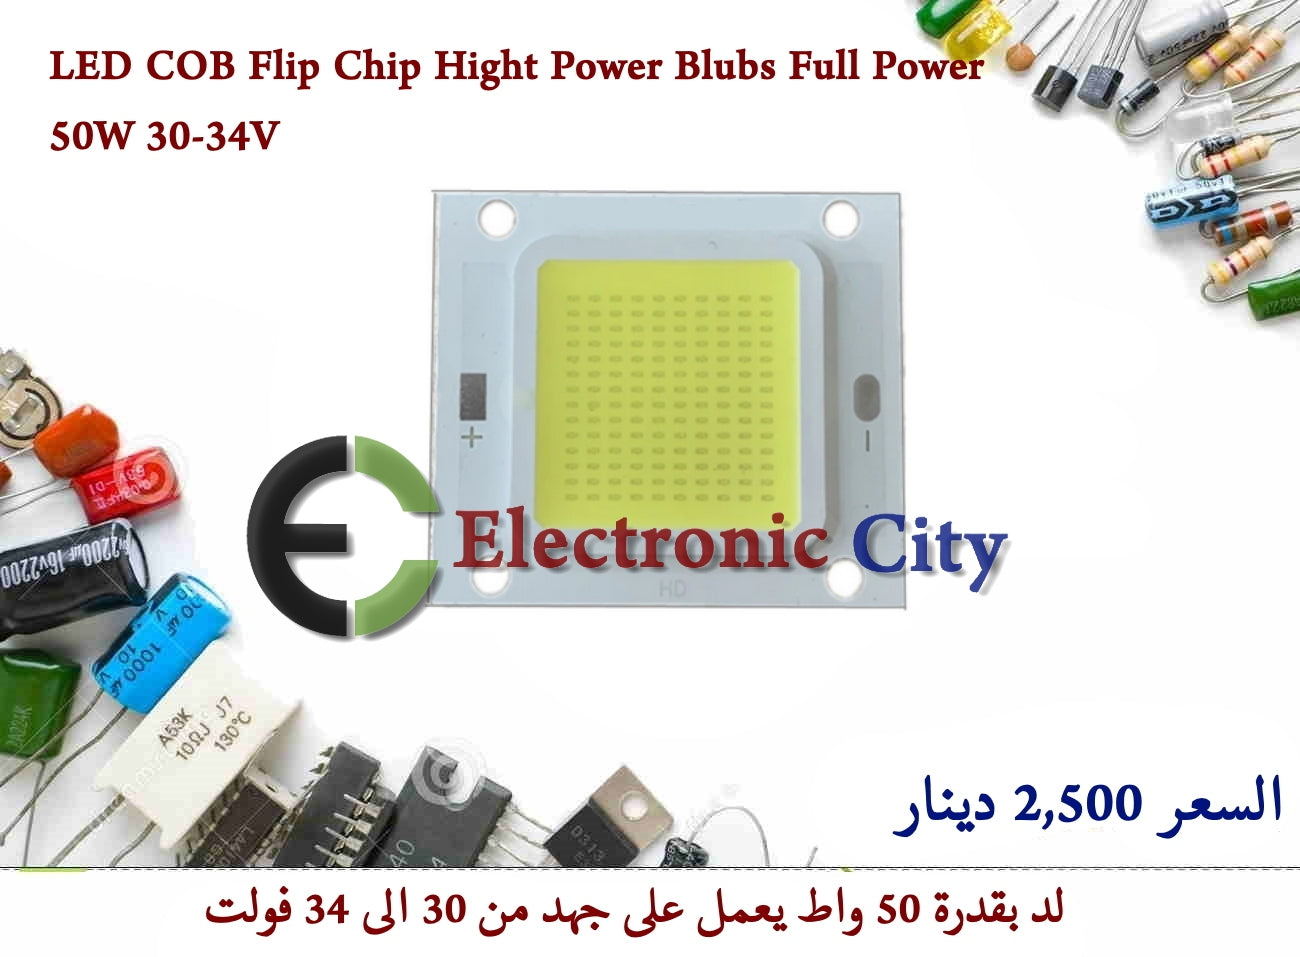 LED COB Flip Chip Hight Power Blubs Full Power 50W 30-34V